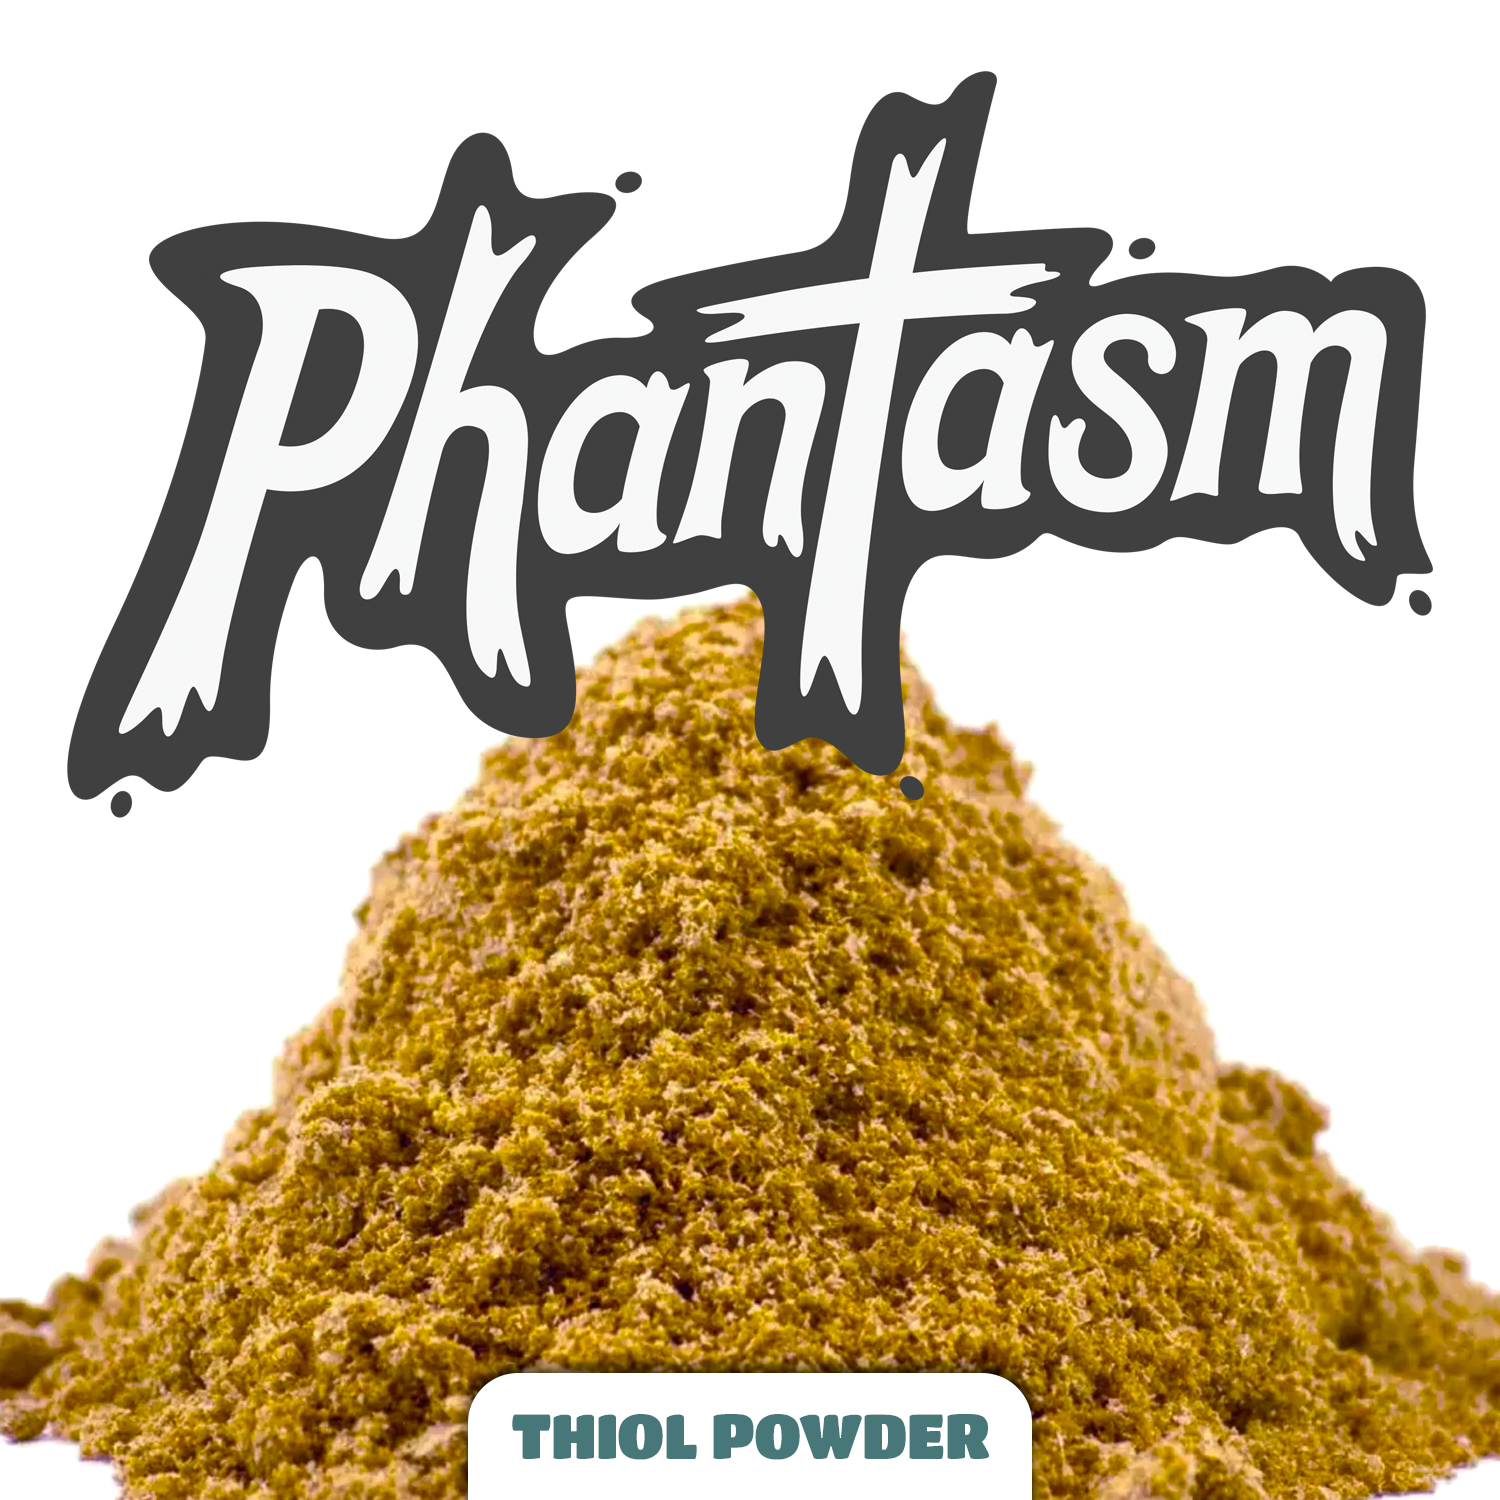 Phantasm Thiol Powder NZ